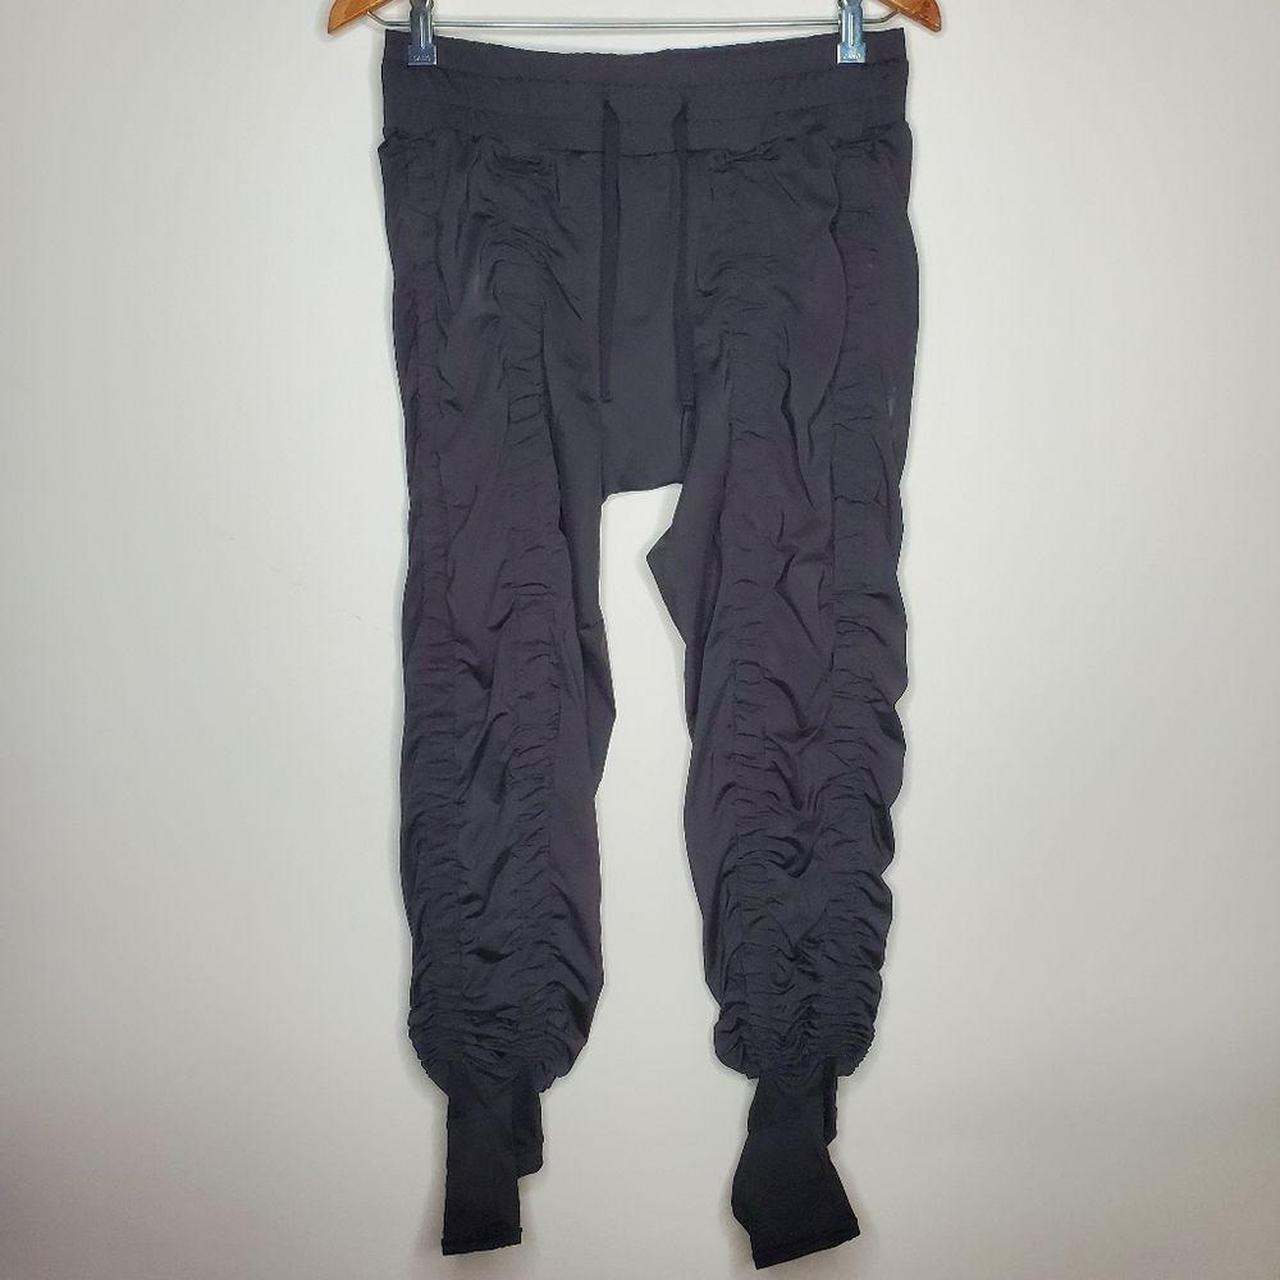 AGOGIE Women's Petite +40 Resistance Pants